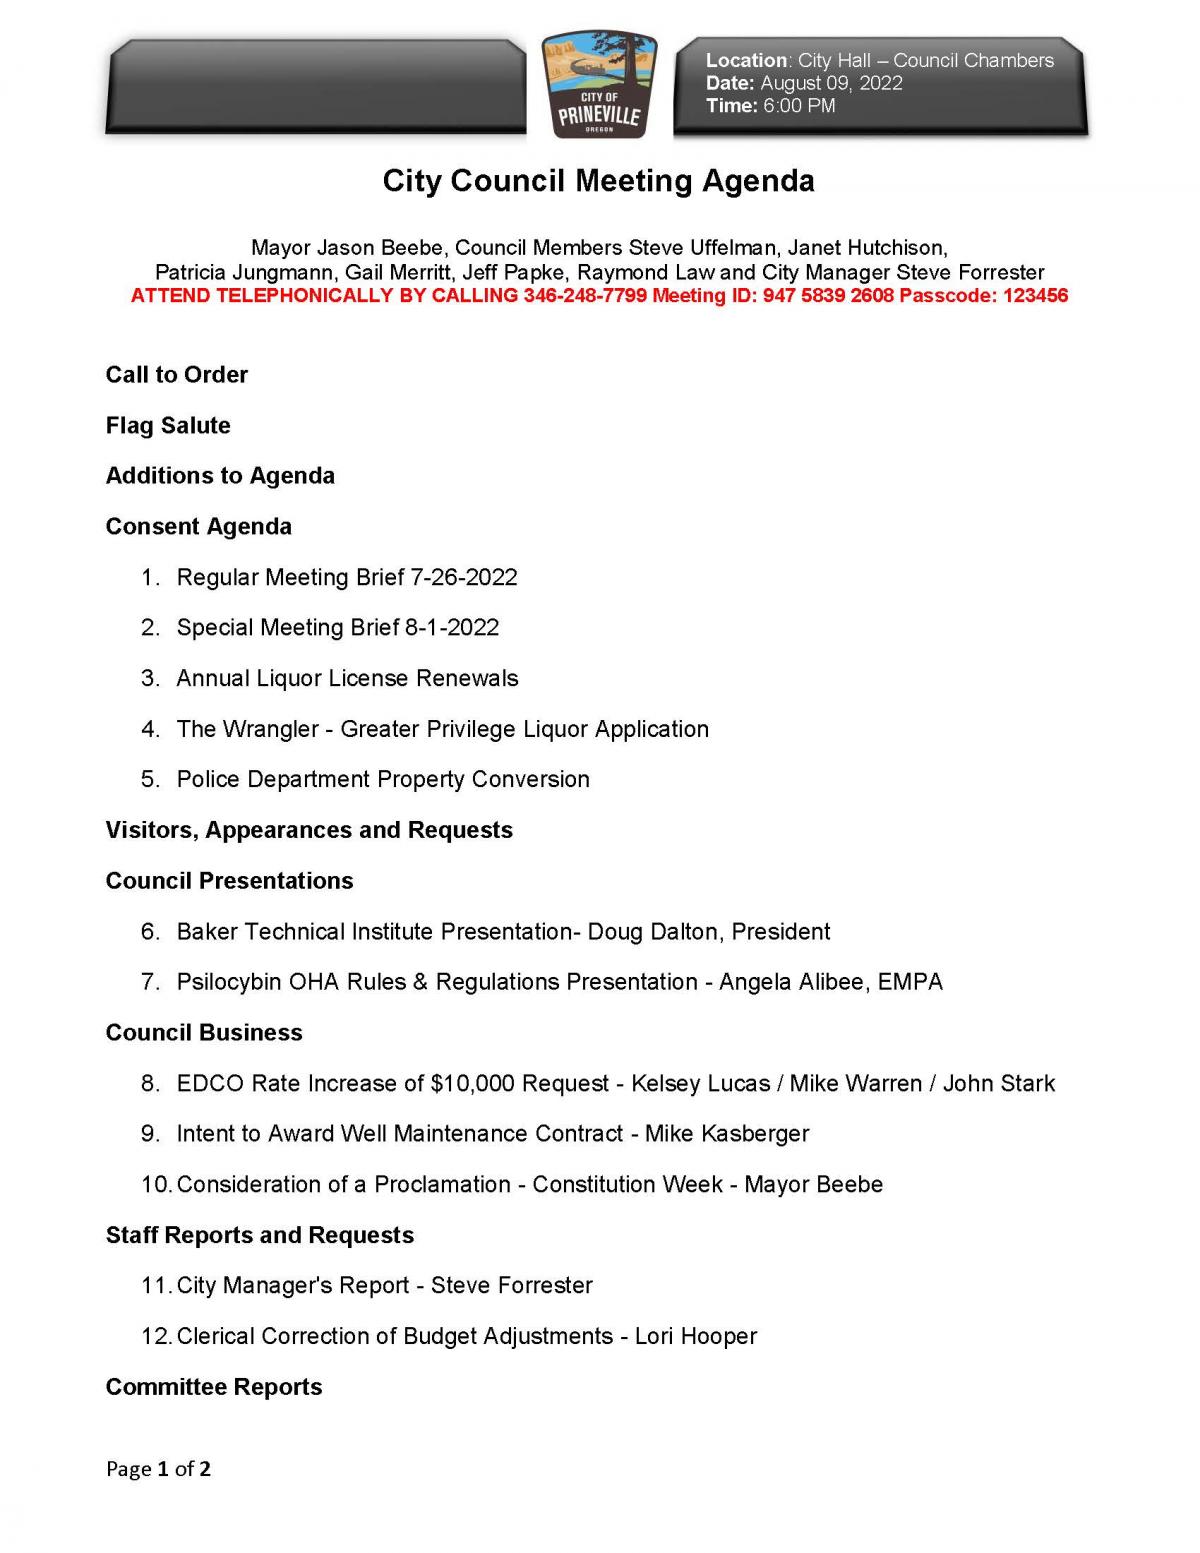 Page 1 - Council Agenda